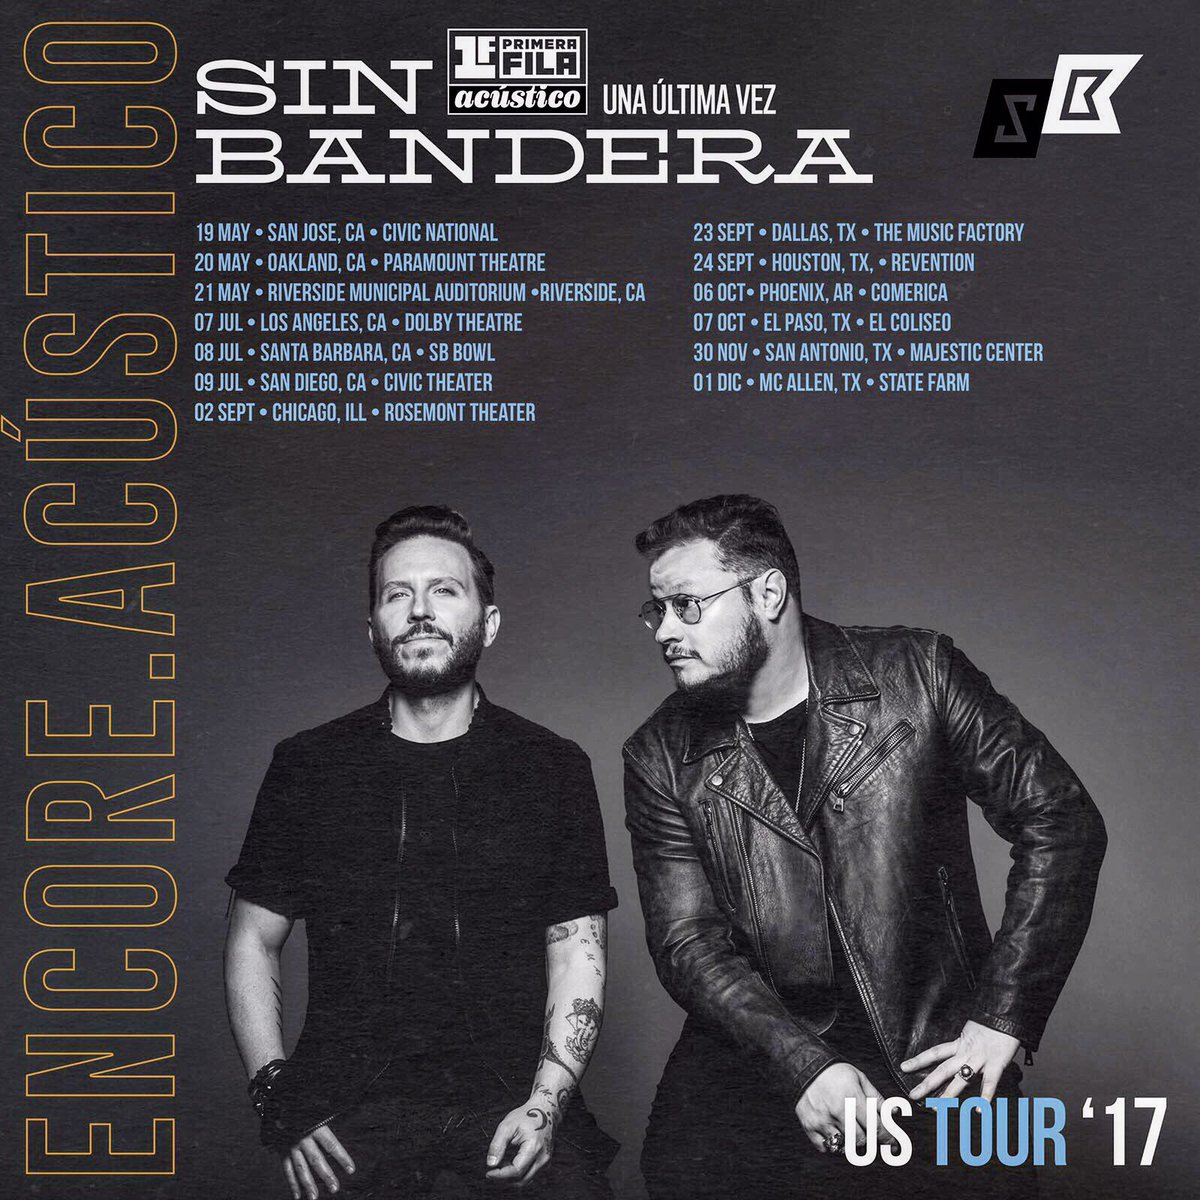 Concierto de Sin Bandera, Una Última Vez Tour, en El Paso, TX, Estados Unidos, Sábado, 07 de octubre de 2017